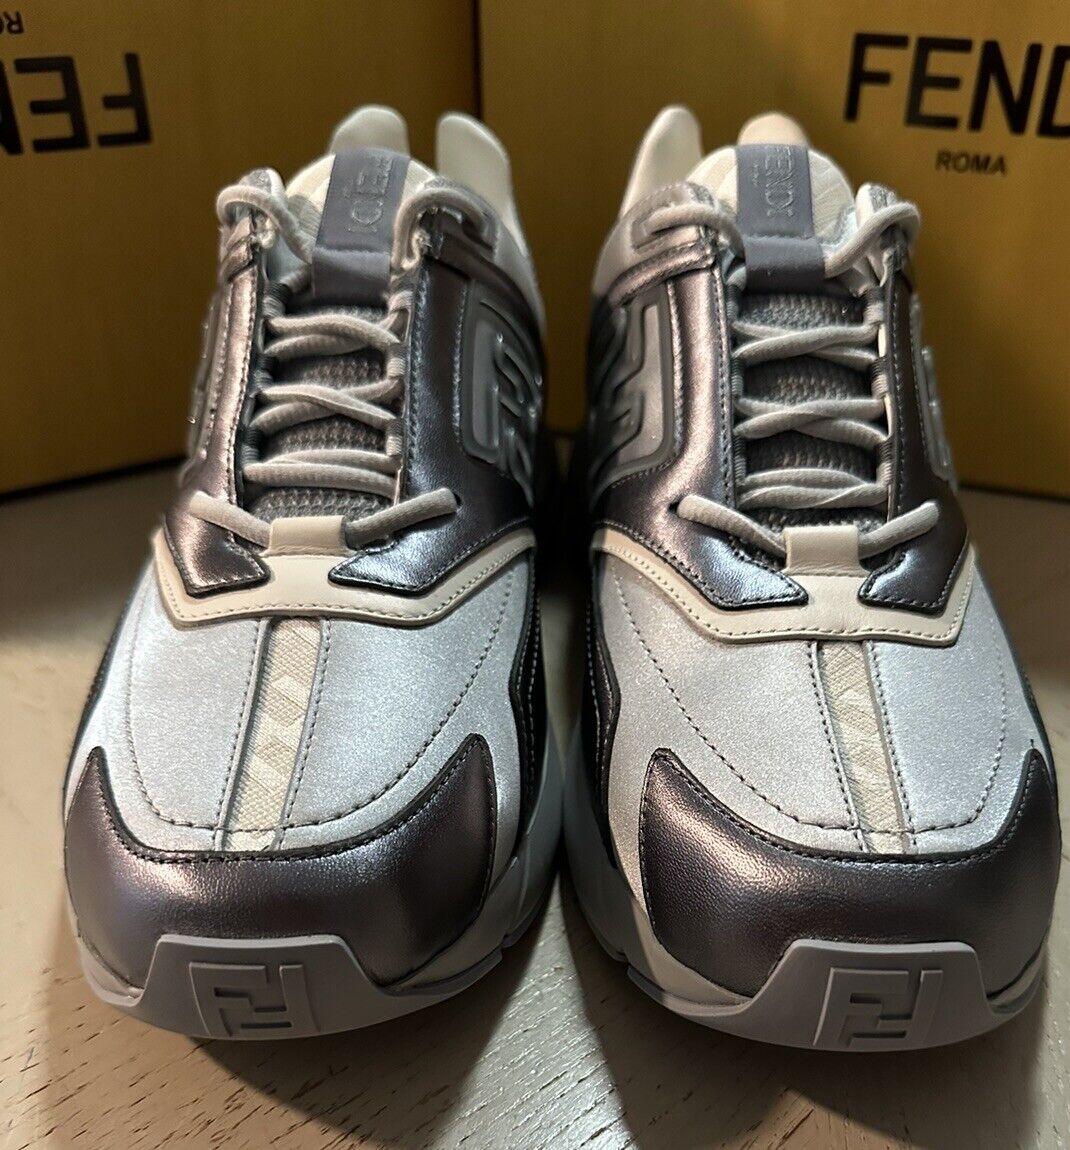 NIB Мужские кожаные спортивные кроссовки Fendi FF с логотипом за 1200 долларов США, серый/серебристый 11 США/10 Великобритания